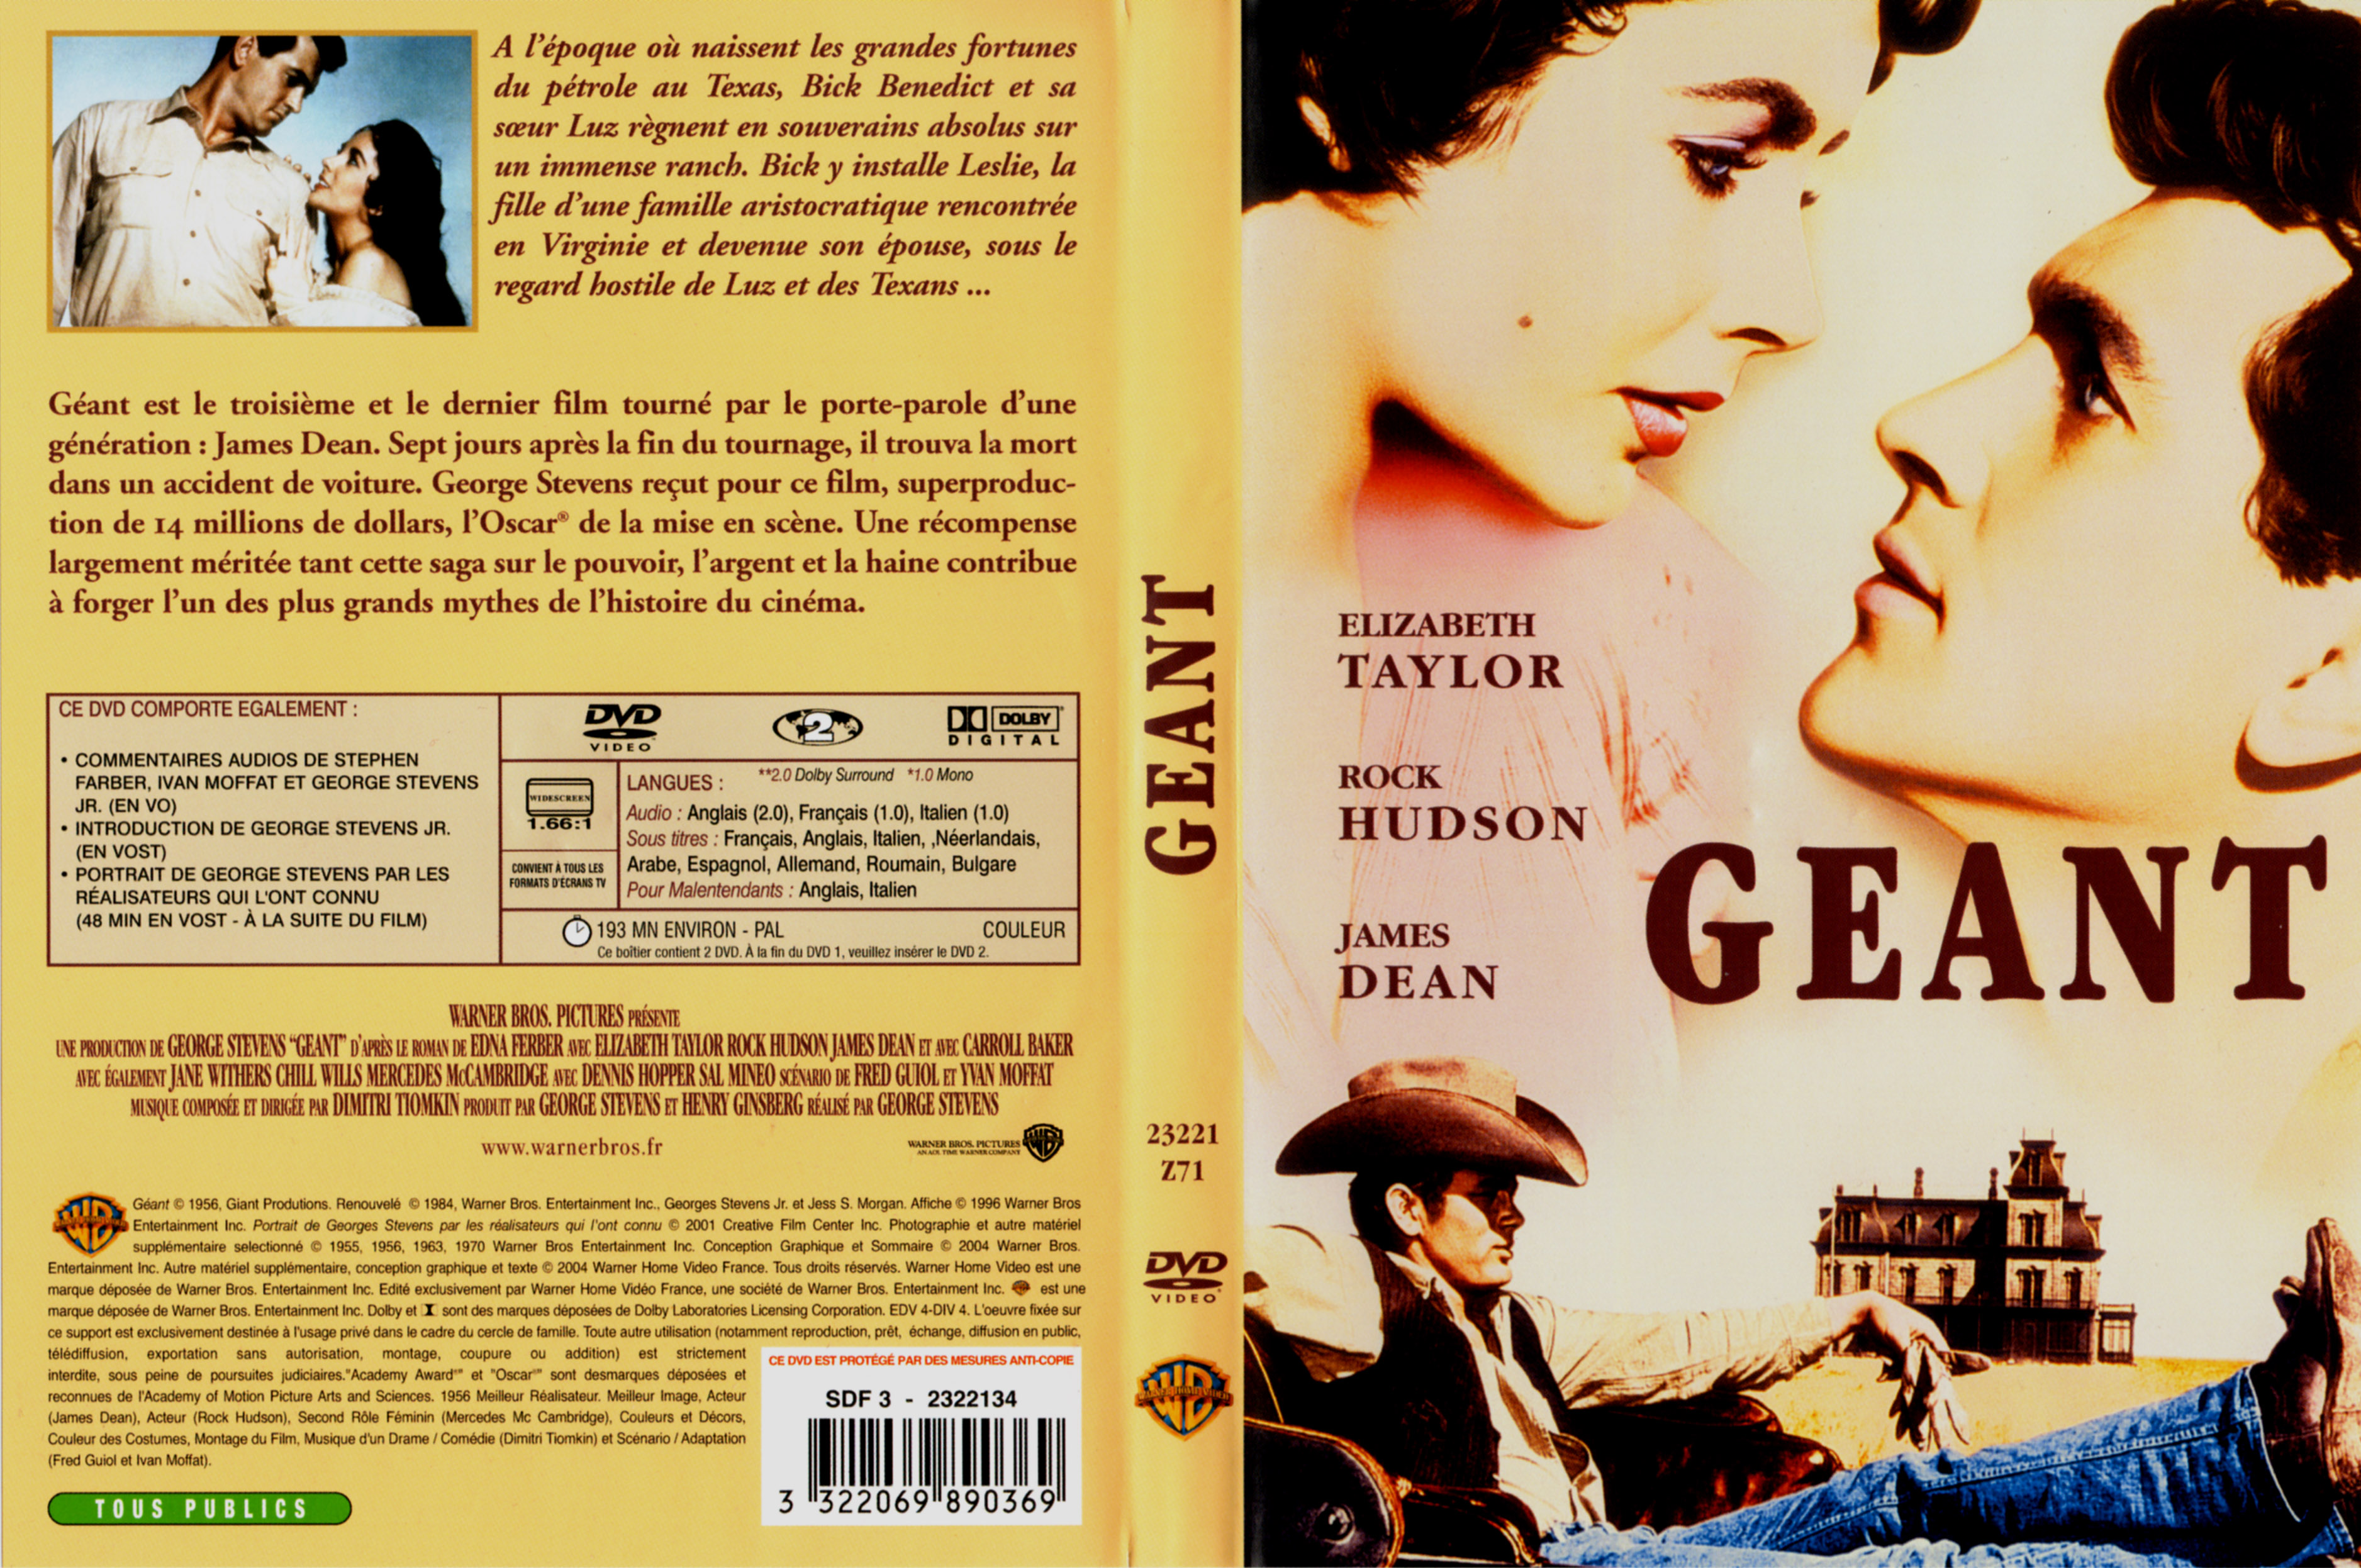 Jaquette DVD Gant v2